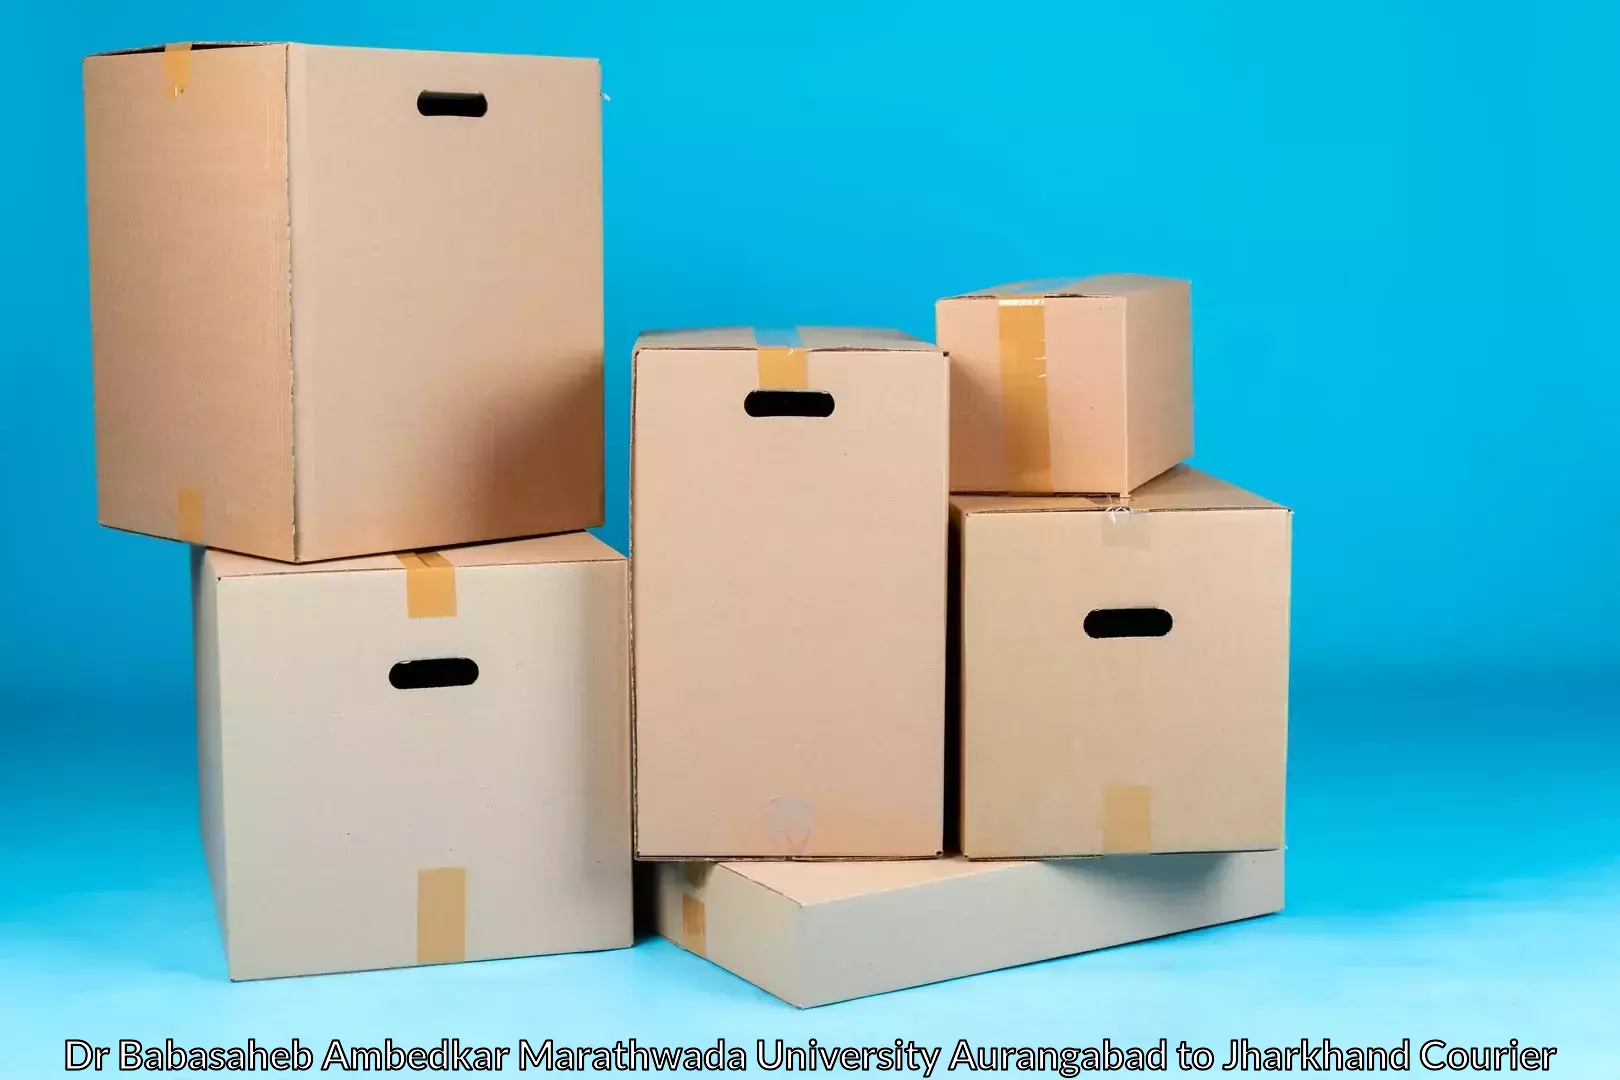 Home relocation and storage Dr Babasaheb Ambedkar Marathwada University Aurangabad to Chandwa